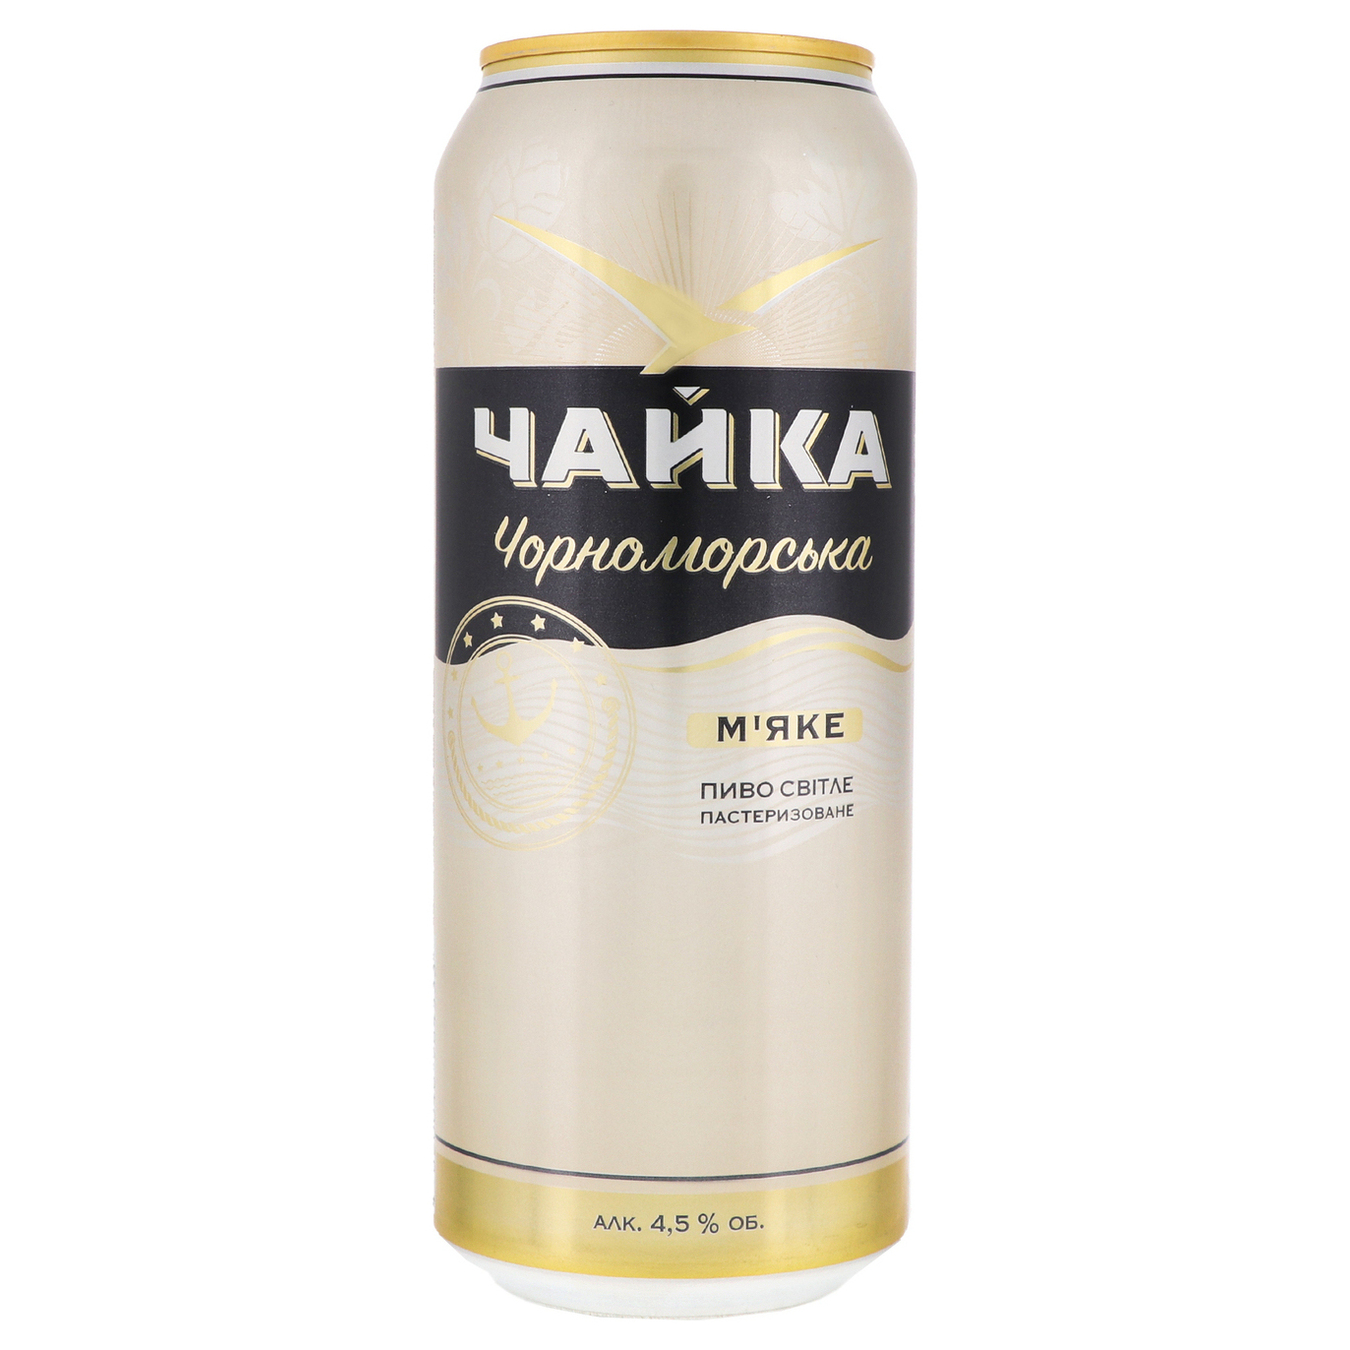 Пиво Чайка Черноморская Мягкое светлое фильтрованное пастеризованное 4,5% 500мл